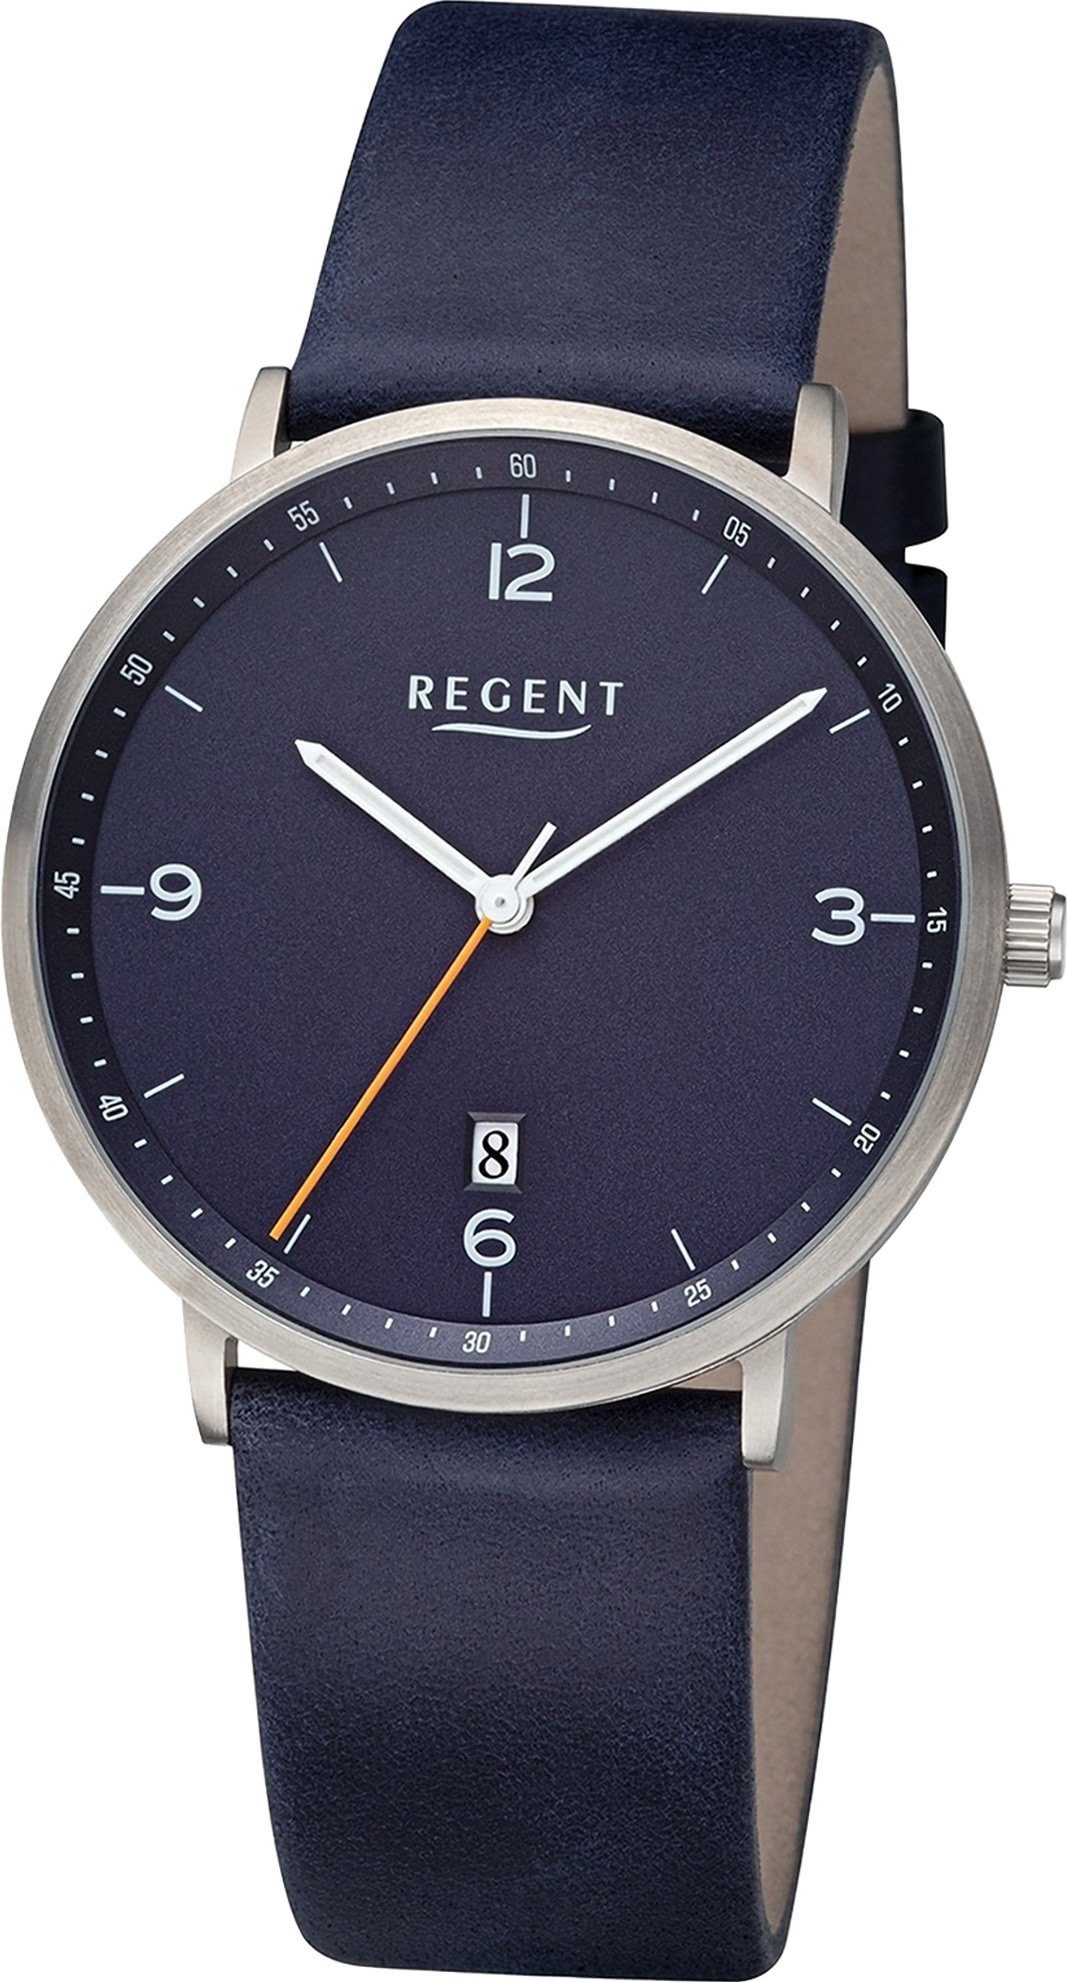 Armbanduhr Quarzuhr Regent Herren groß Lederarmband Regent 39mm), Analog, Armbanduhr Herren extra rund, (ca.